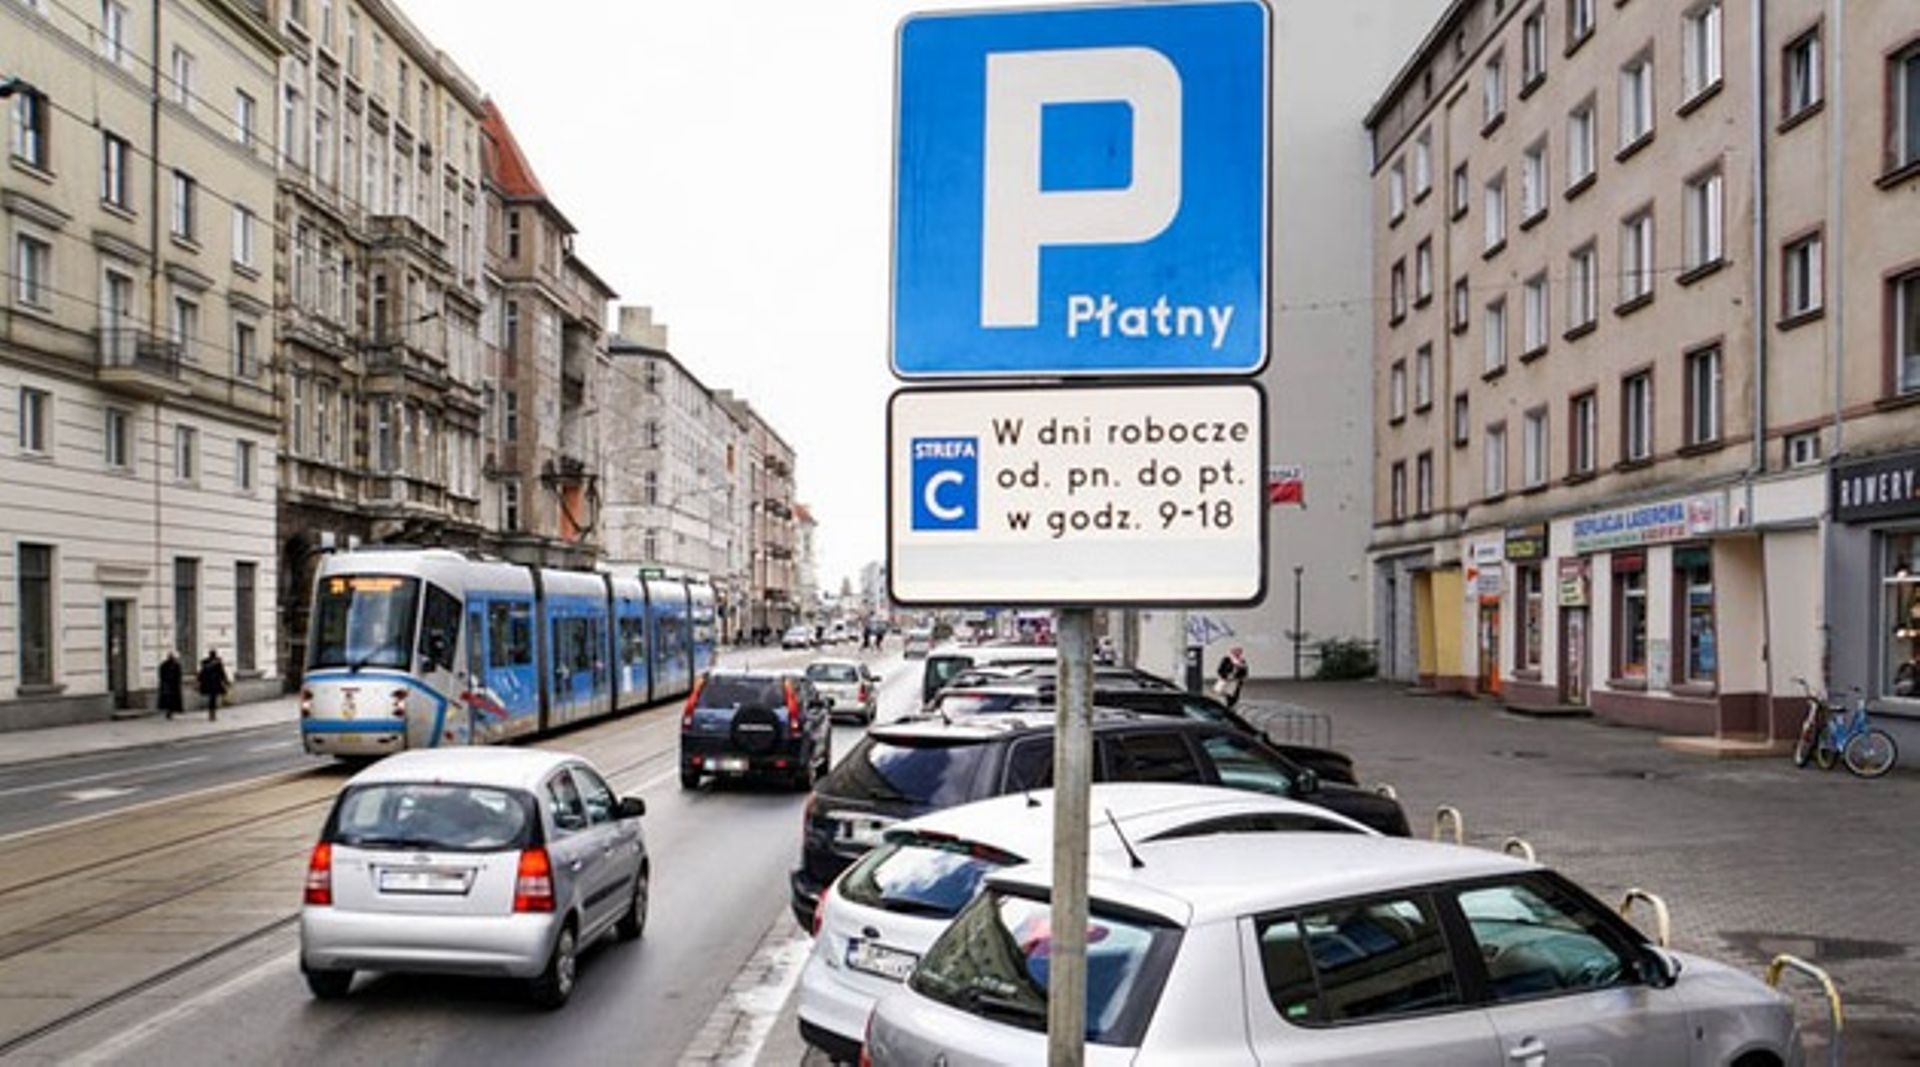 Podwyżka opłat za parkowanie we Wrocławiu uchwalona. Nawet 7,70 zł za godzinę 